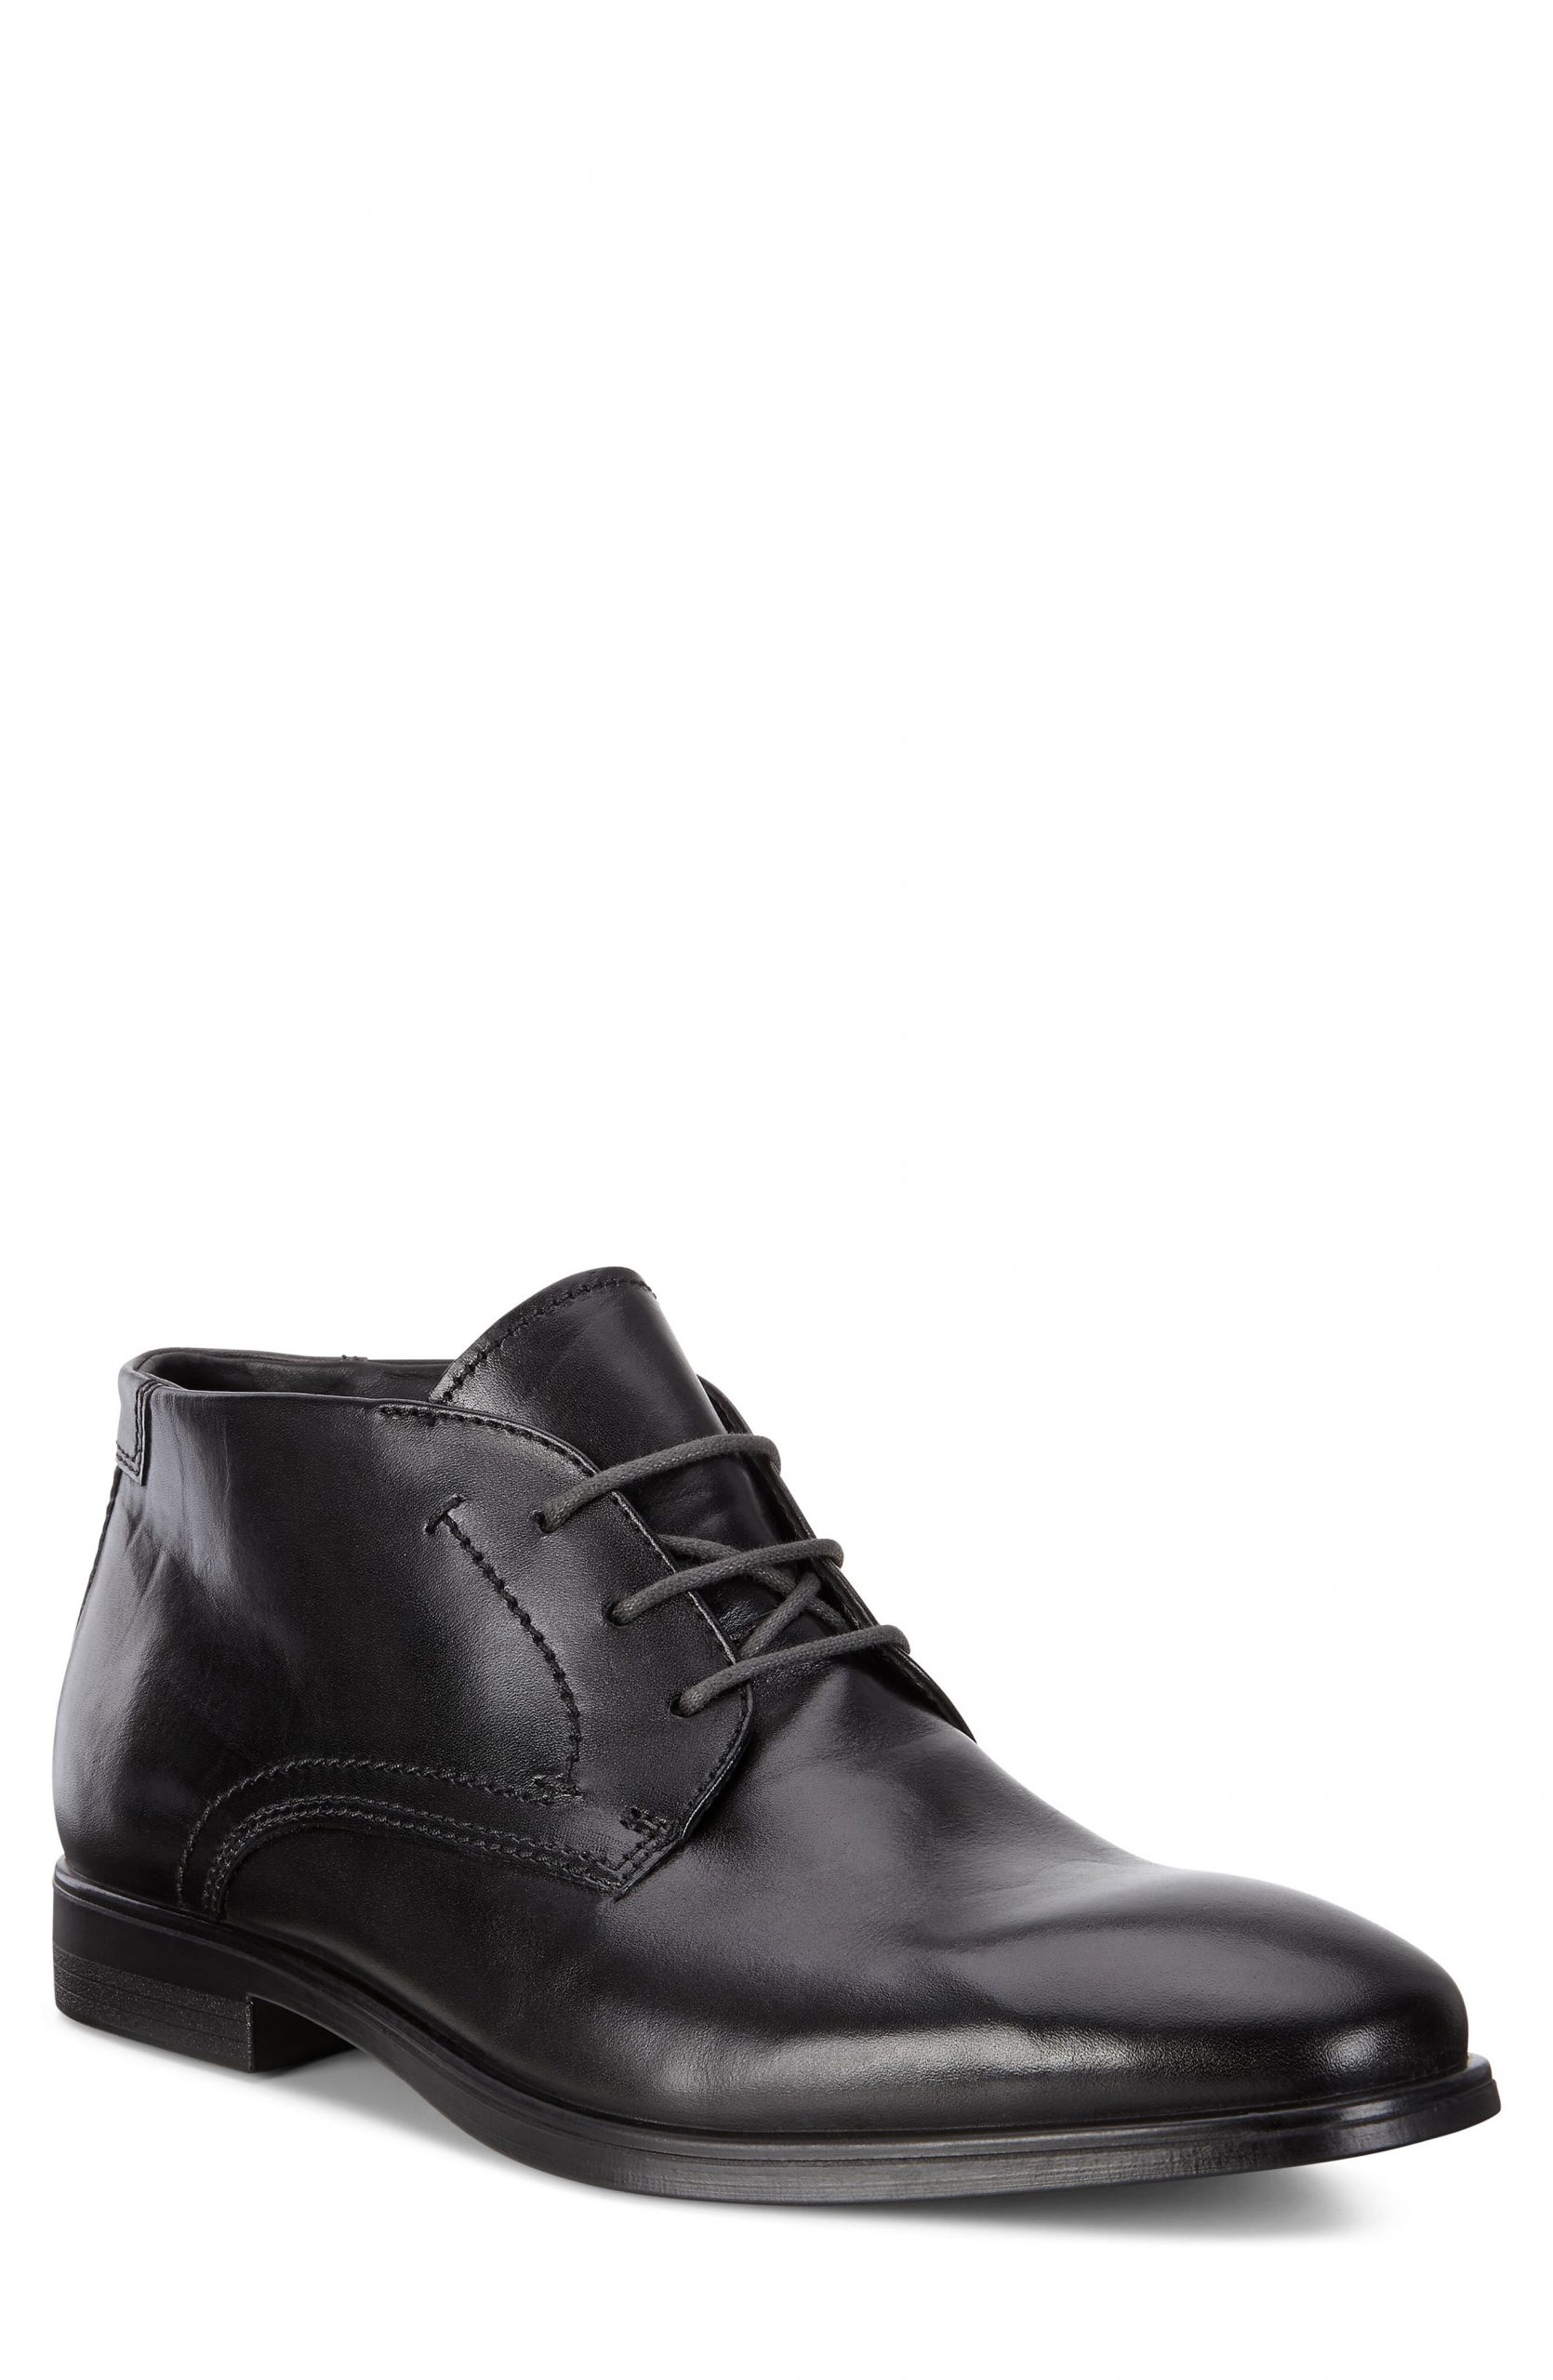 Men’s Ecco Melbourne Chukka Boot, Size 11-11.5US / 45EU – Black | The ...